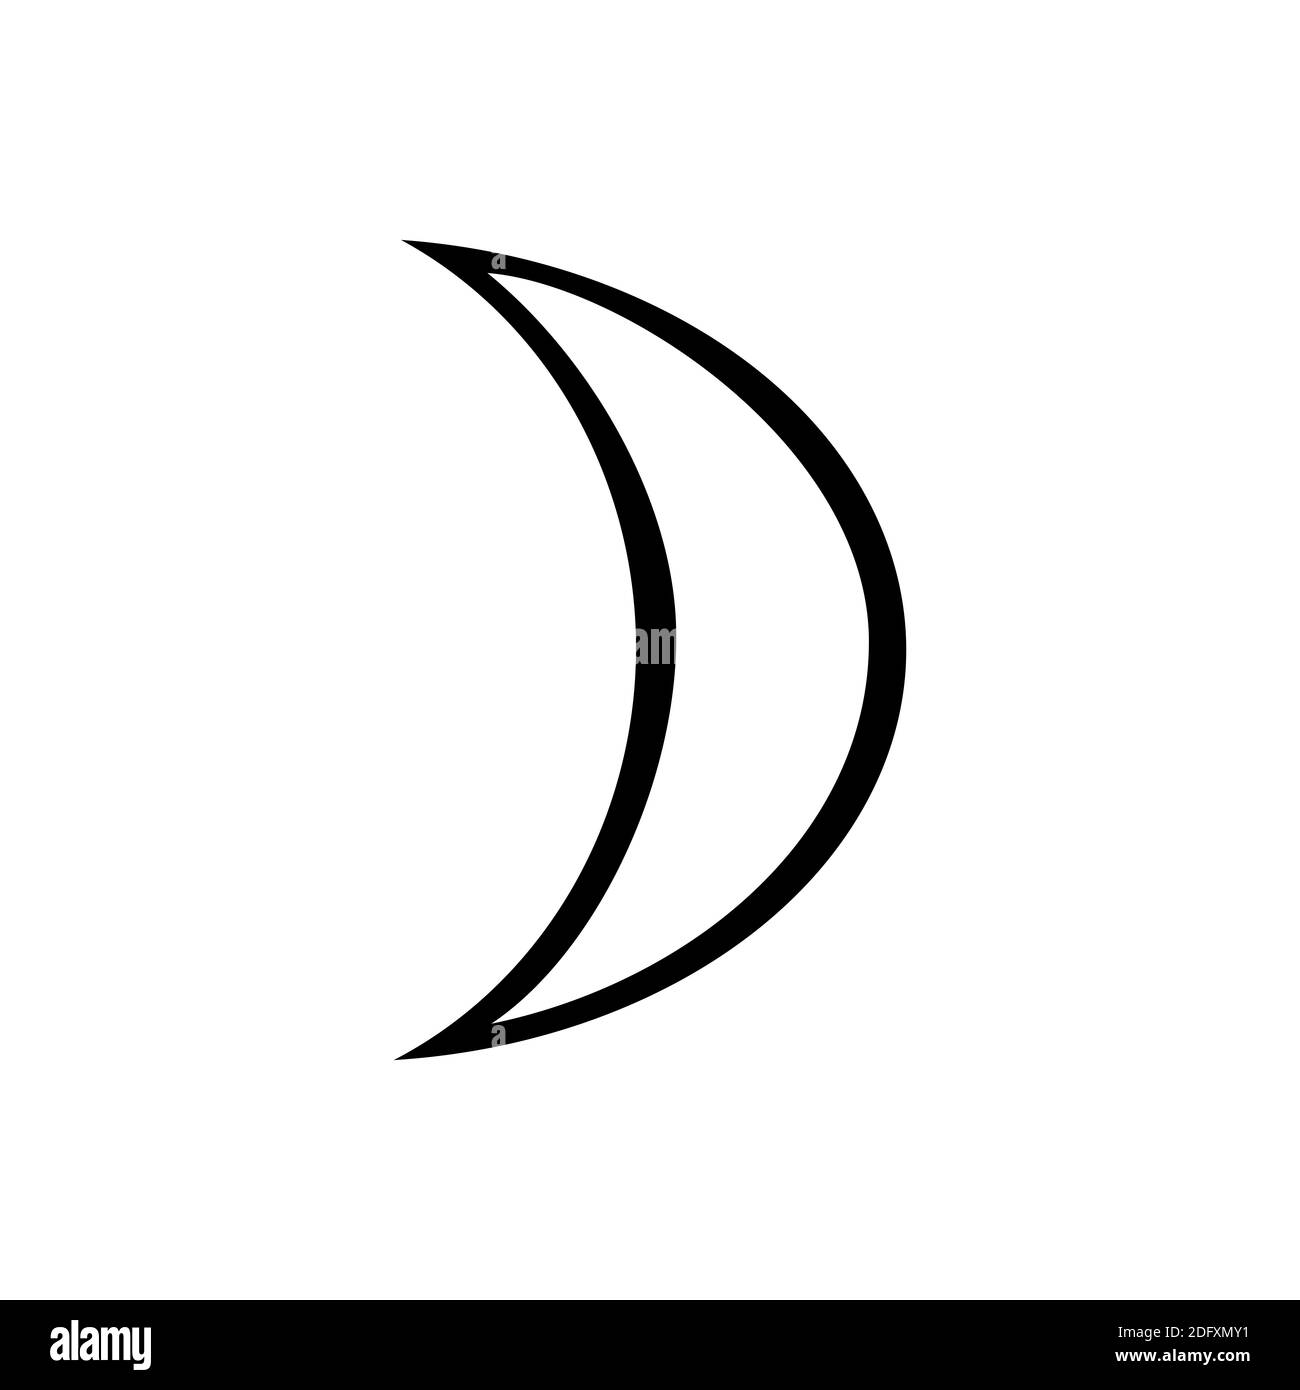 le symbole de la lune, un des symboles de l'alchimie. Icône de lune noire  et blanche Photo Stock - Alamy